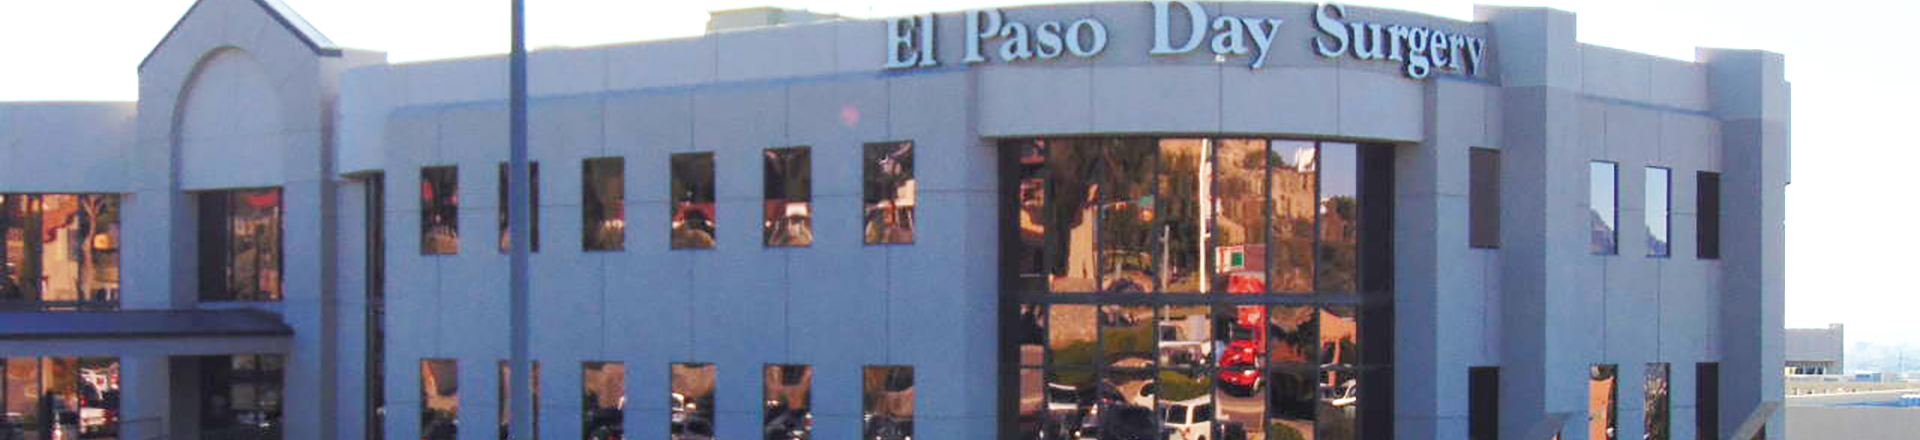 El Paso Day Surgery